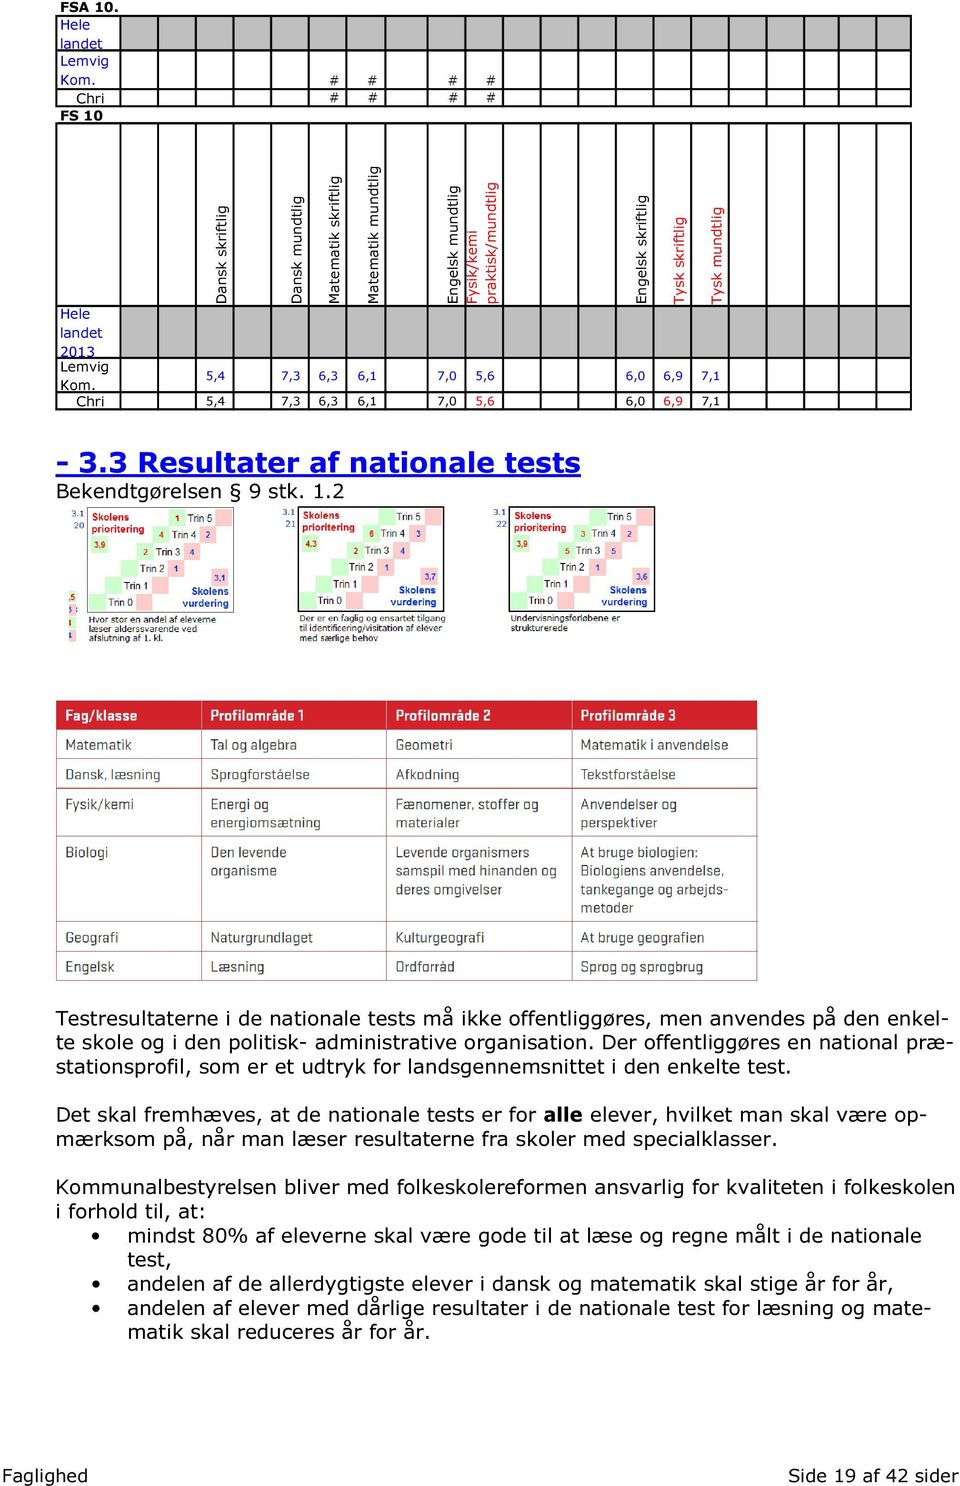 Engelsk skriftlig Tysk skriftlig Tysk mundtlig - 3.3 Resultater af nationale tests Bekendtgørelsen 9 stk. 1.